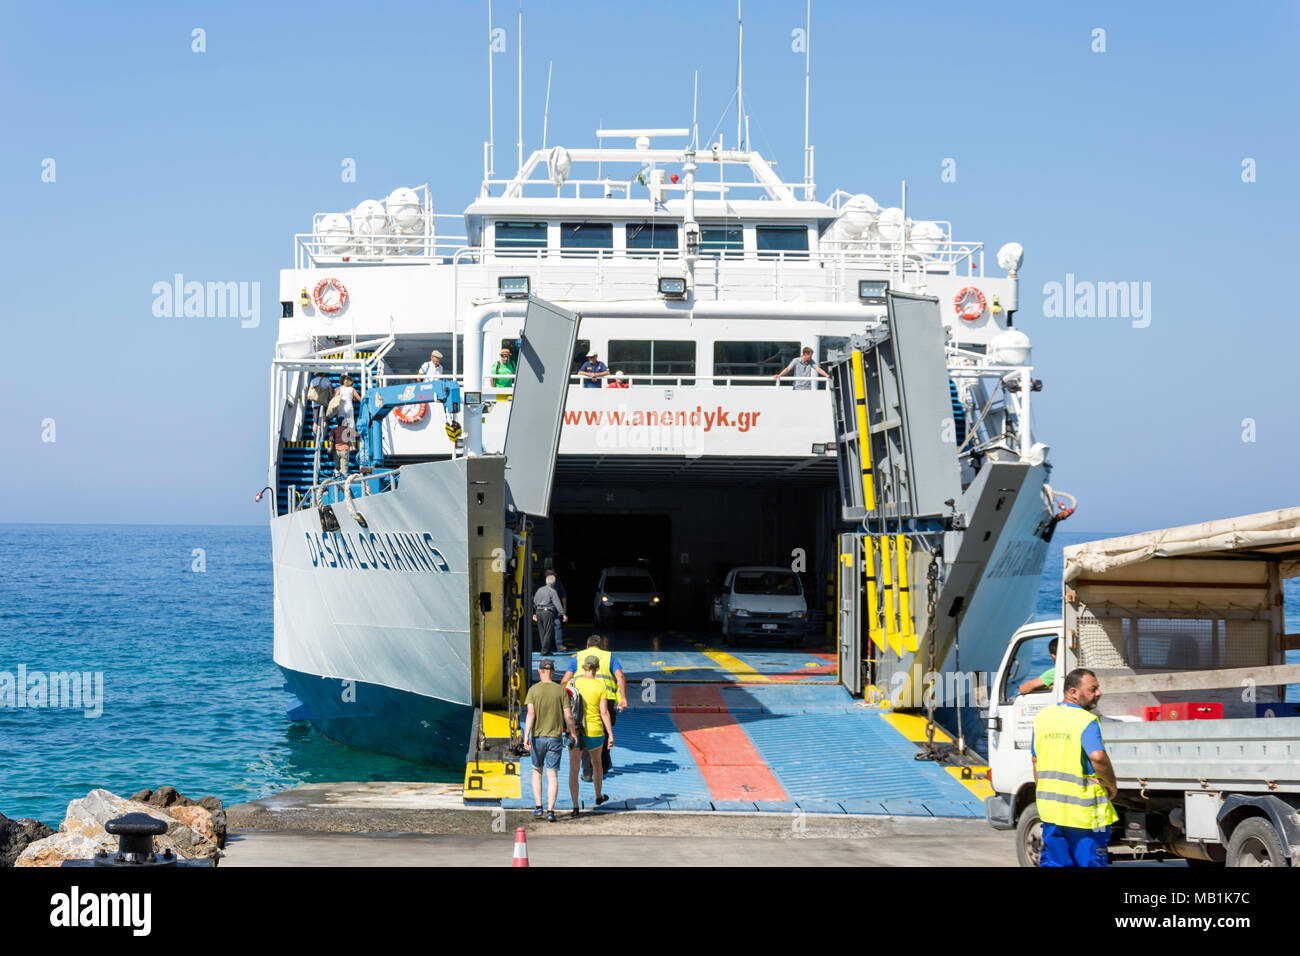 L'embarquement des passagers et des véhicules Daskalogiannis ferry vers Loutro, Hora Sfakion, Sfakia, Chania, Crete Région (Crète), Grèce Banque D'Images